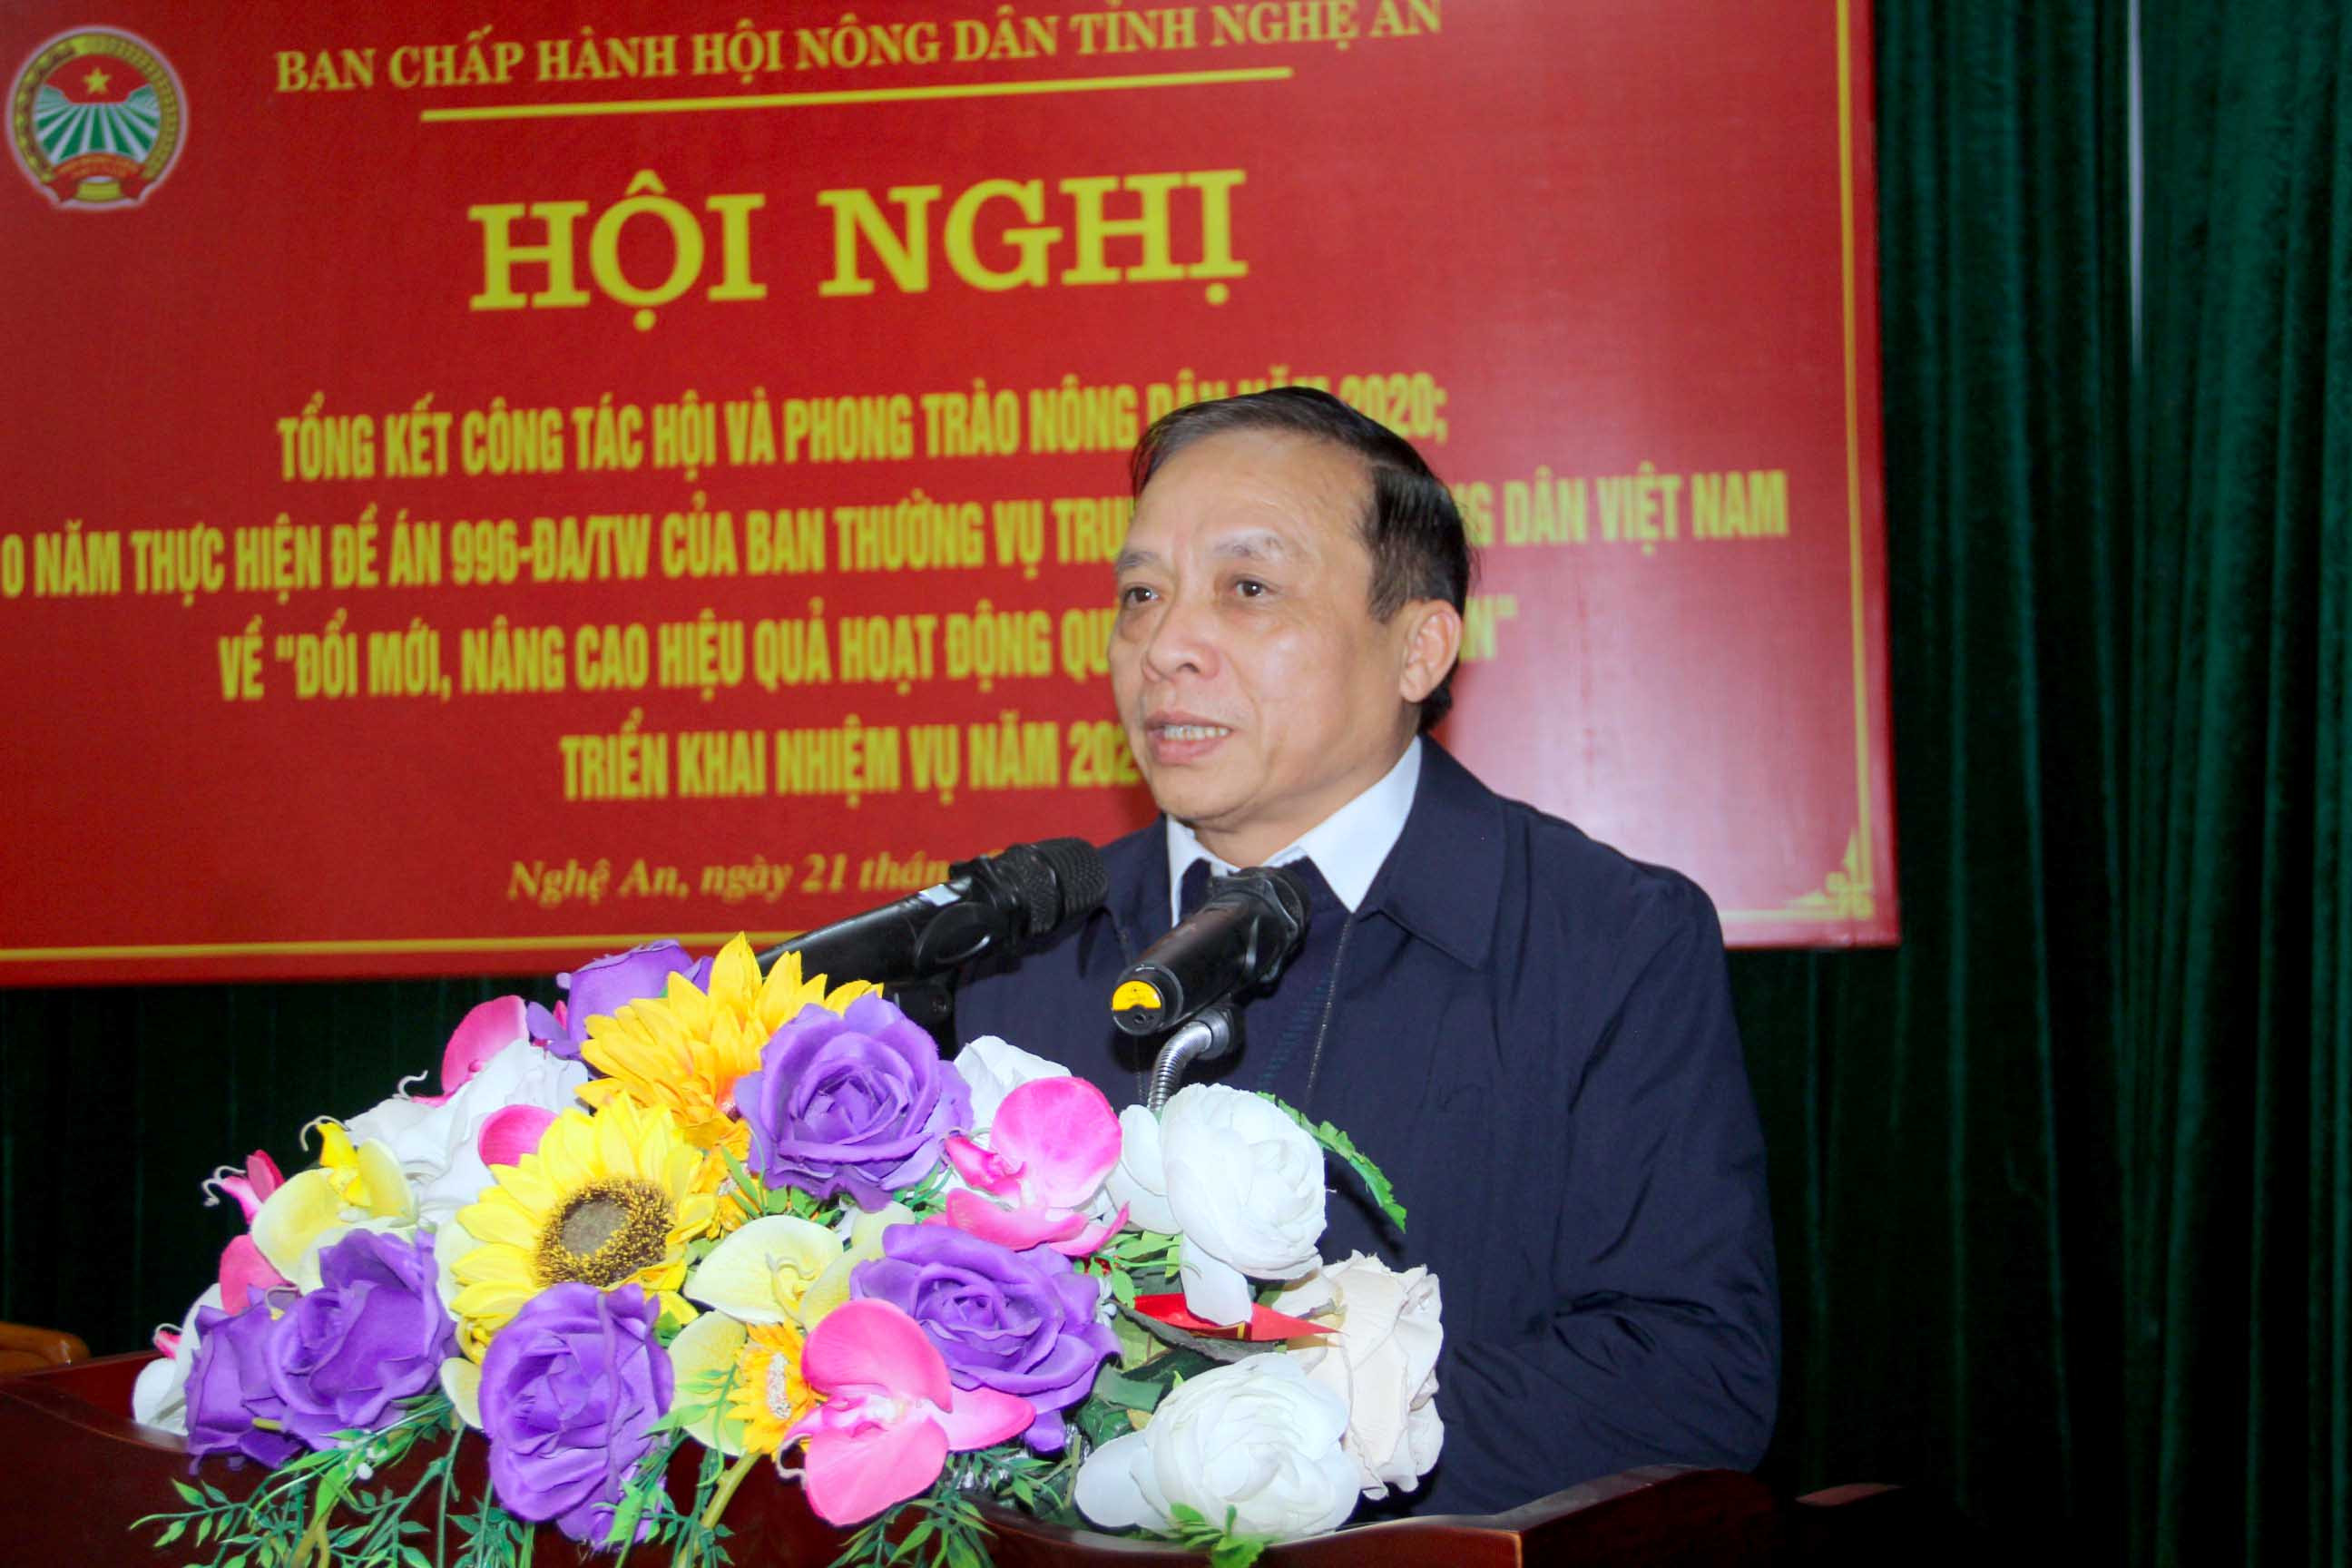 Đồng chí Nguyễn Quang Tùng, Ủy viên BCH Đảng bộ tỉnh, Chủ tịch Hội Nông dân tỉnh đánh giá cao những kết quả các cấp hội đã đạt được trong năm 2020. Ảnh: Quang An